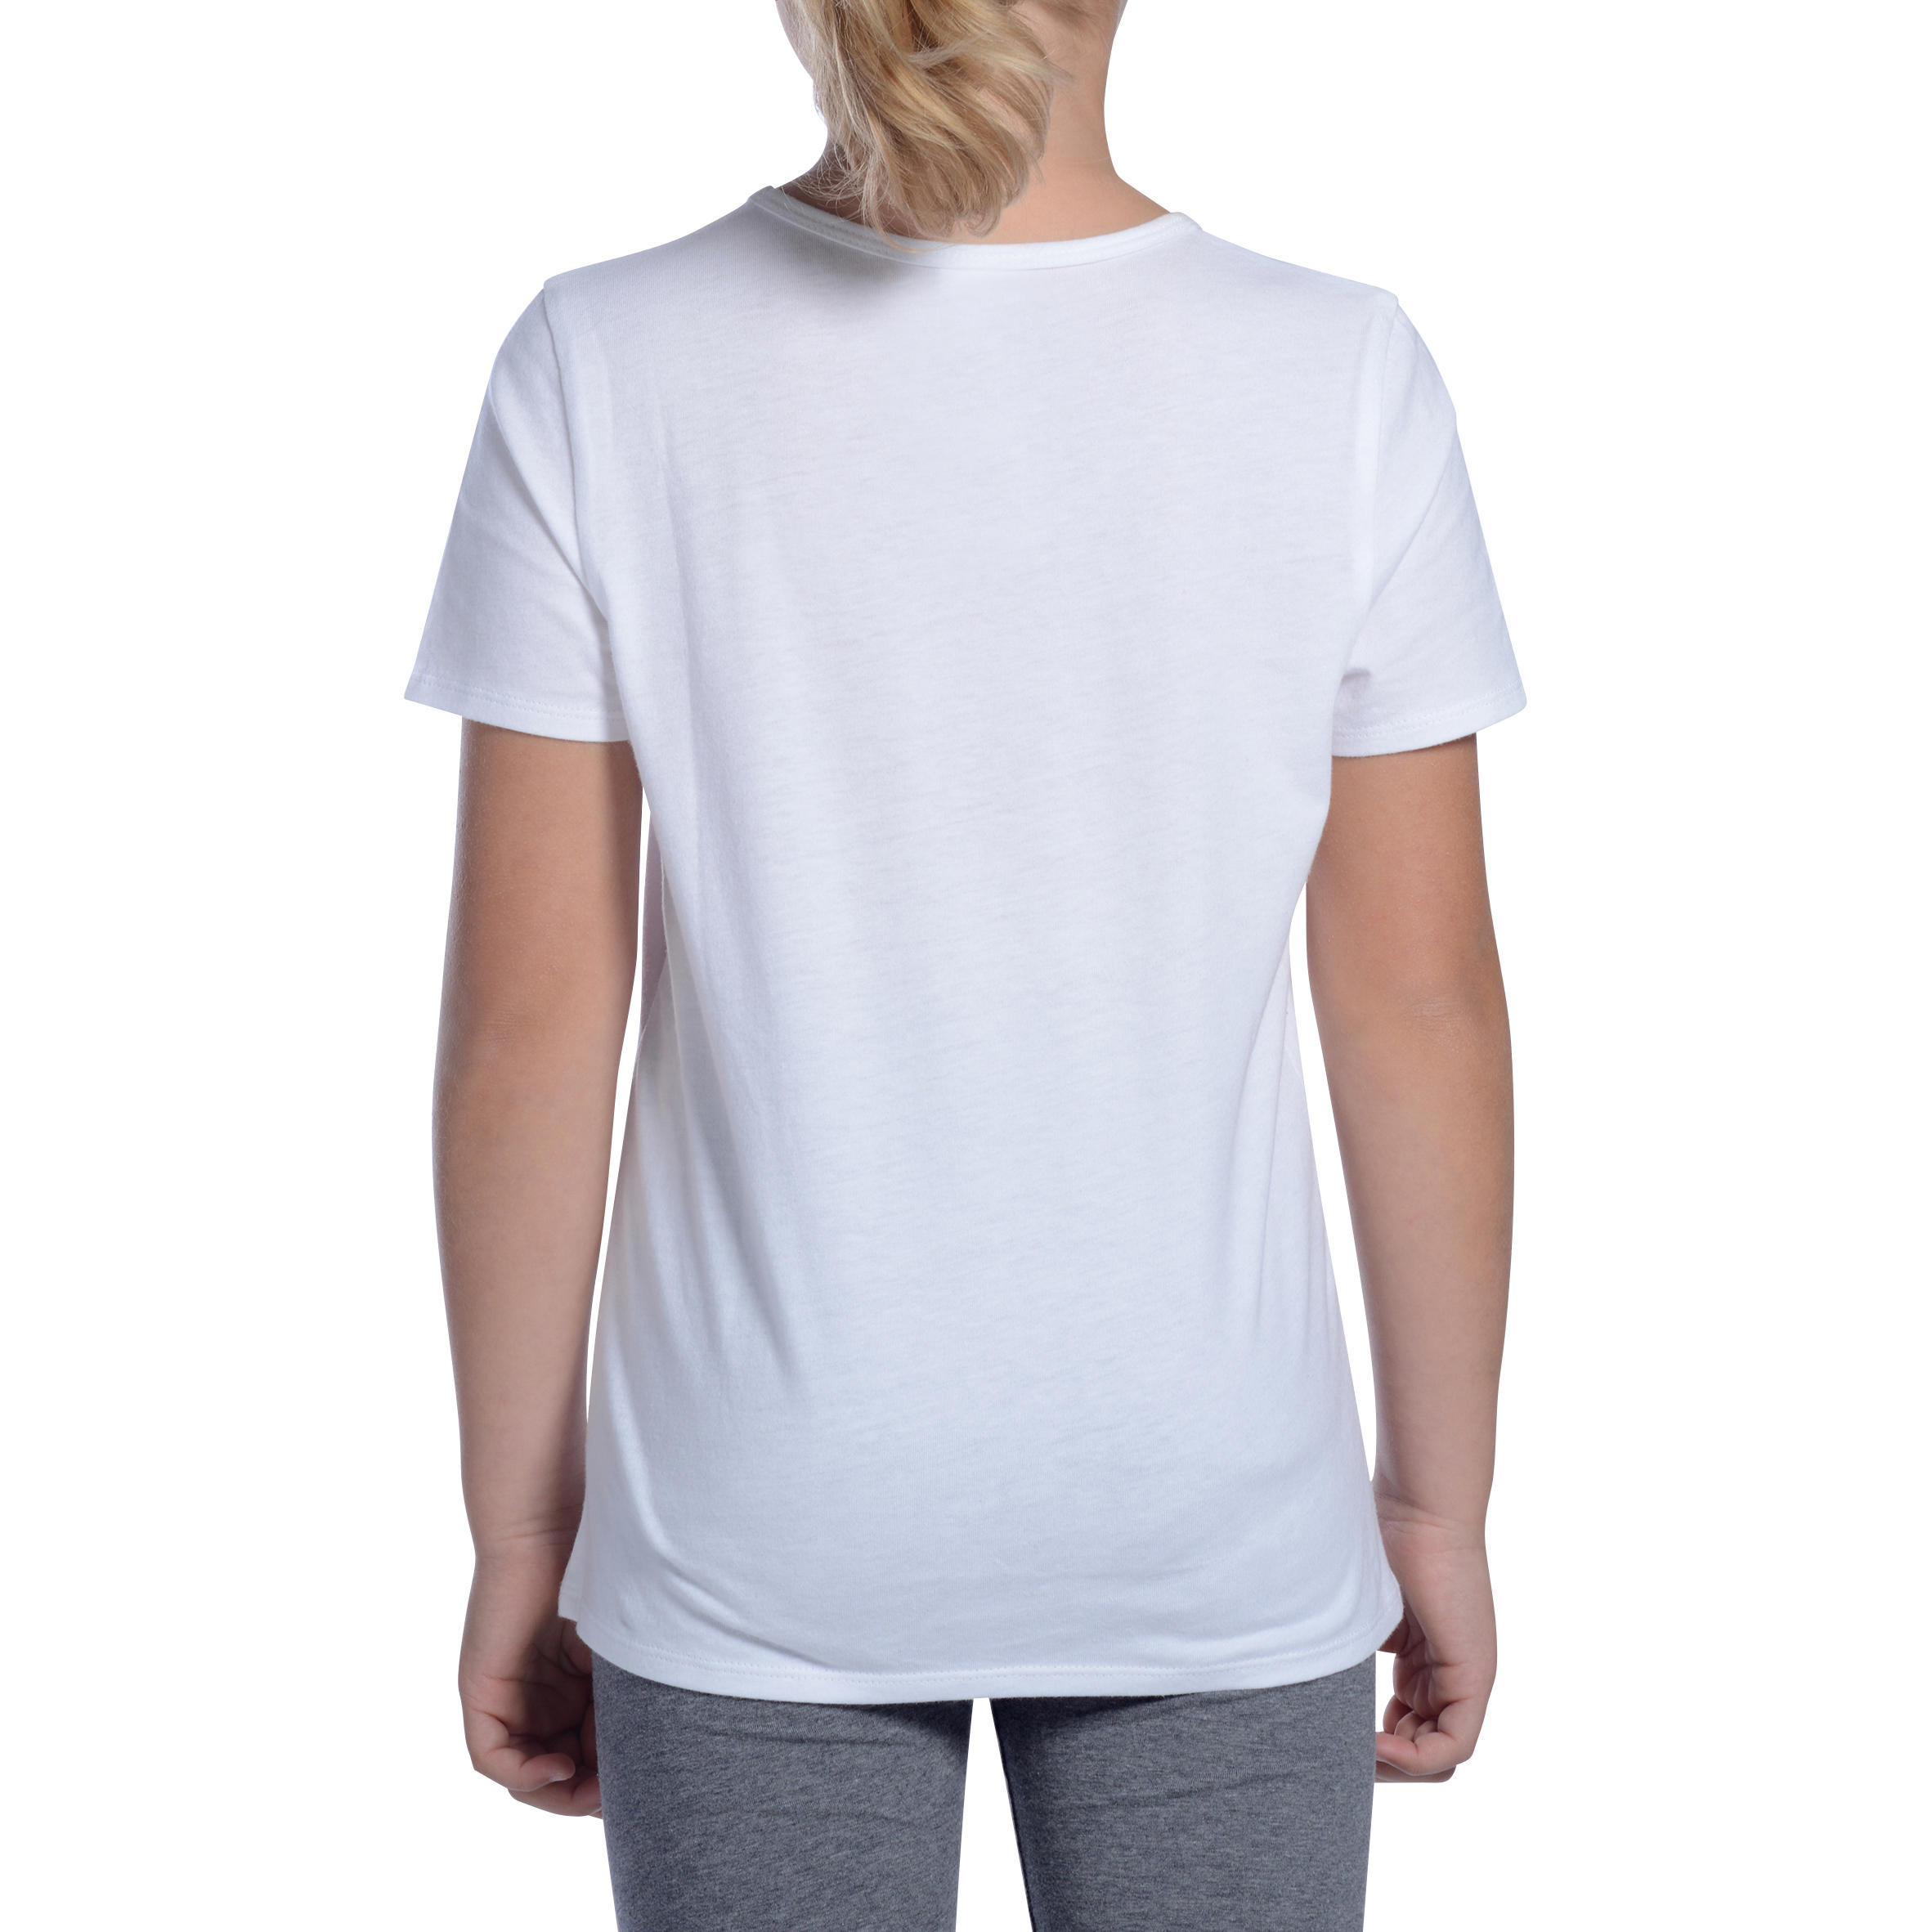 Girls' 100 Short-Sleeved Gym T-Shirt - White 4/9